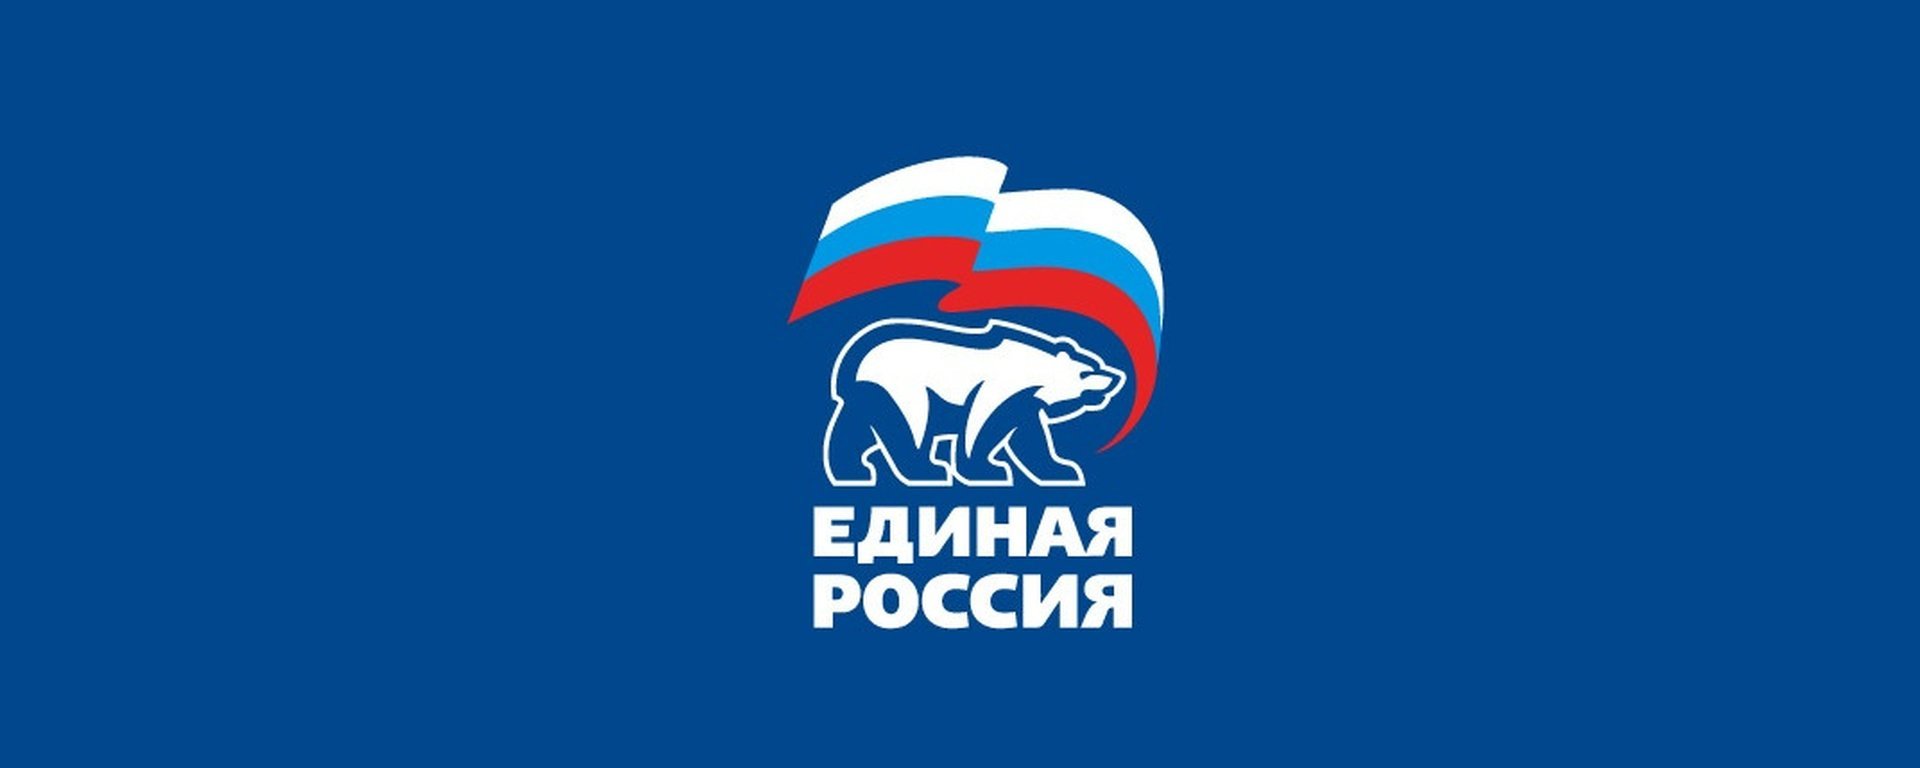 Знак единой россии на прозрачном фоне фото